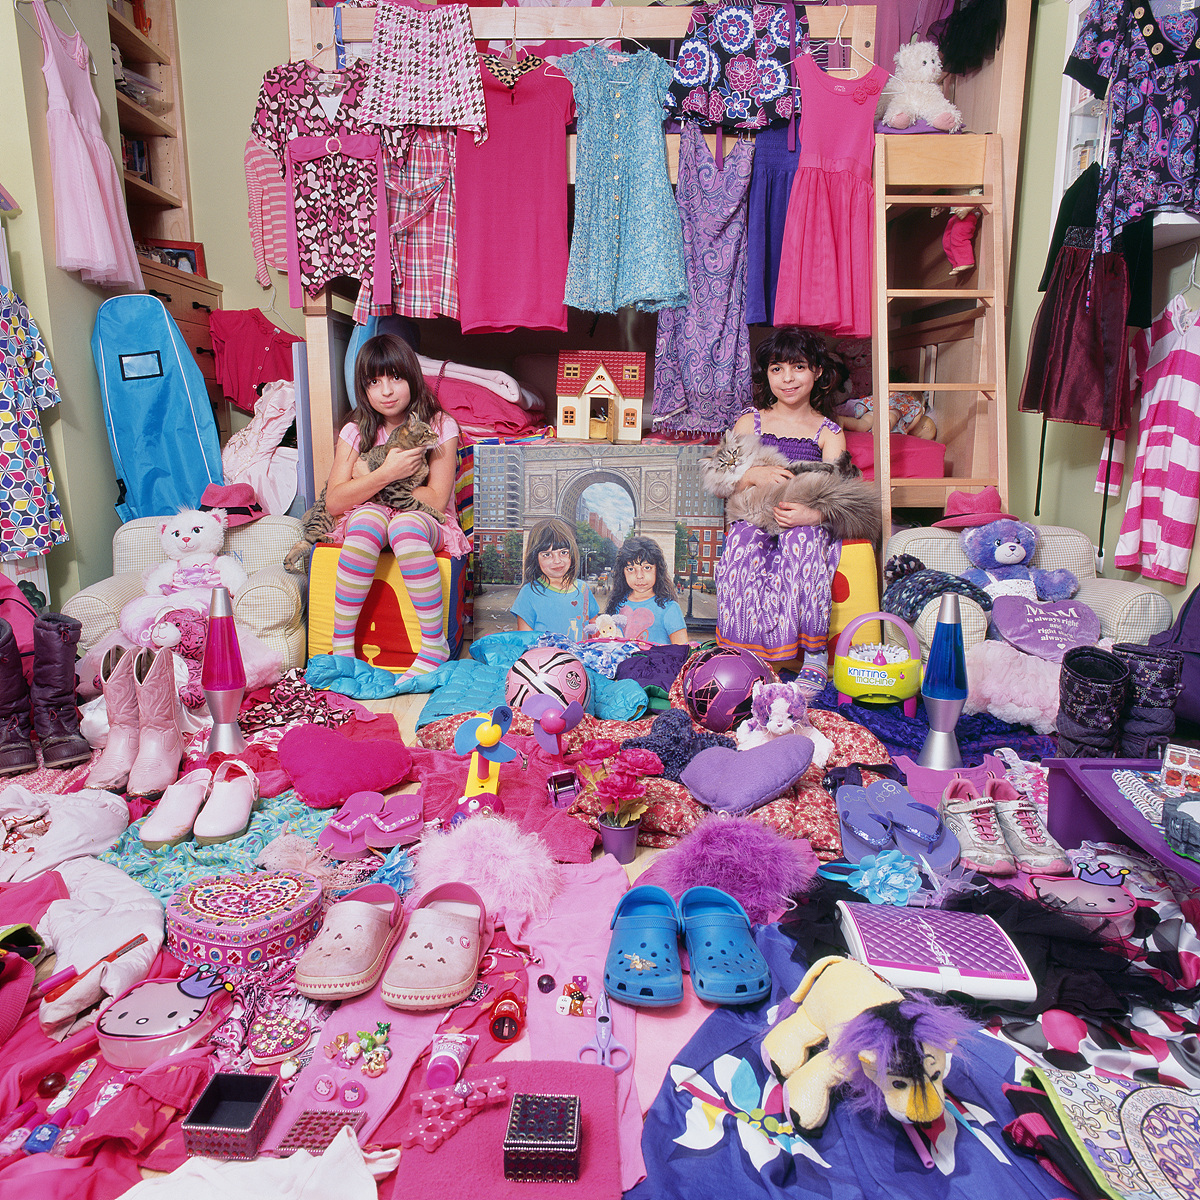 핑크 프로젝트 III-로렌과 캐롤린 그리고 그들의 핑크_보라색 물건들, 뉴욕, 미국, 라이트젯 프린트, 2015